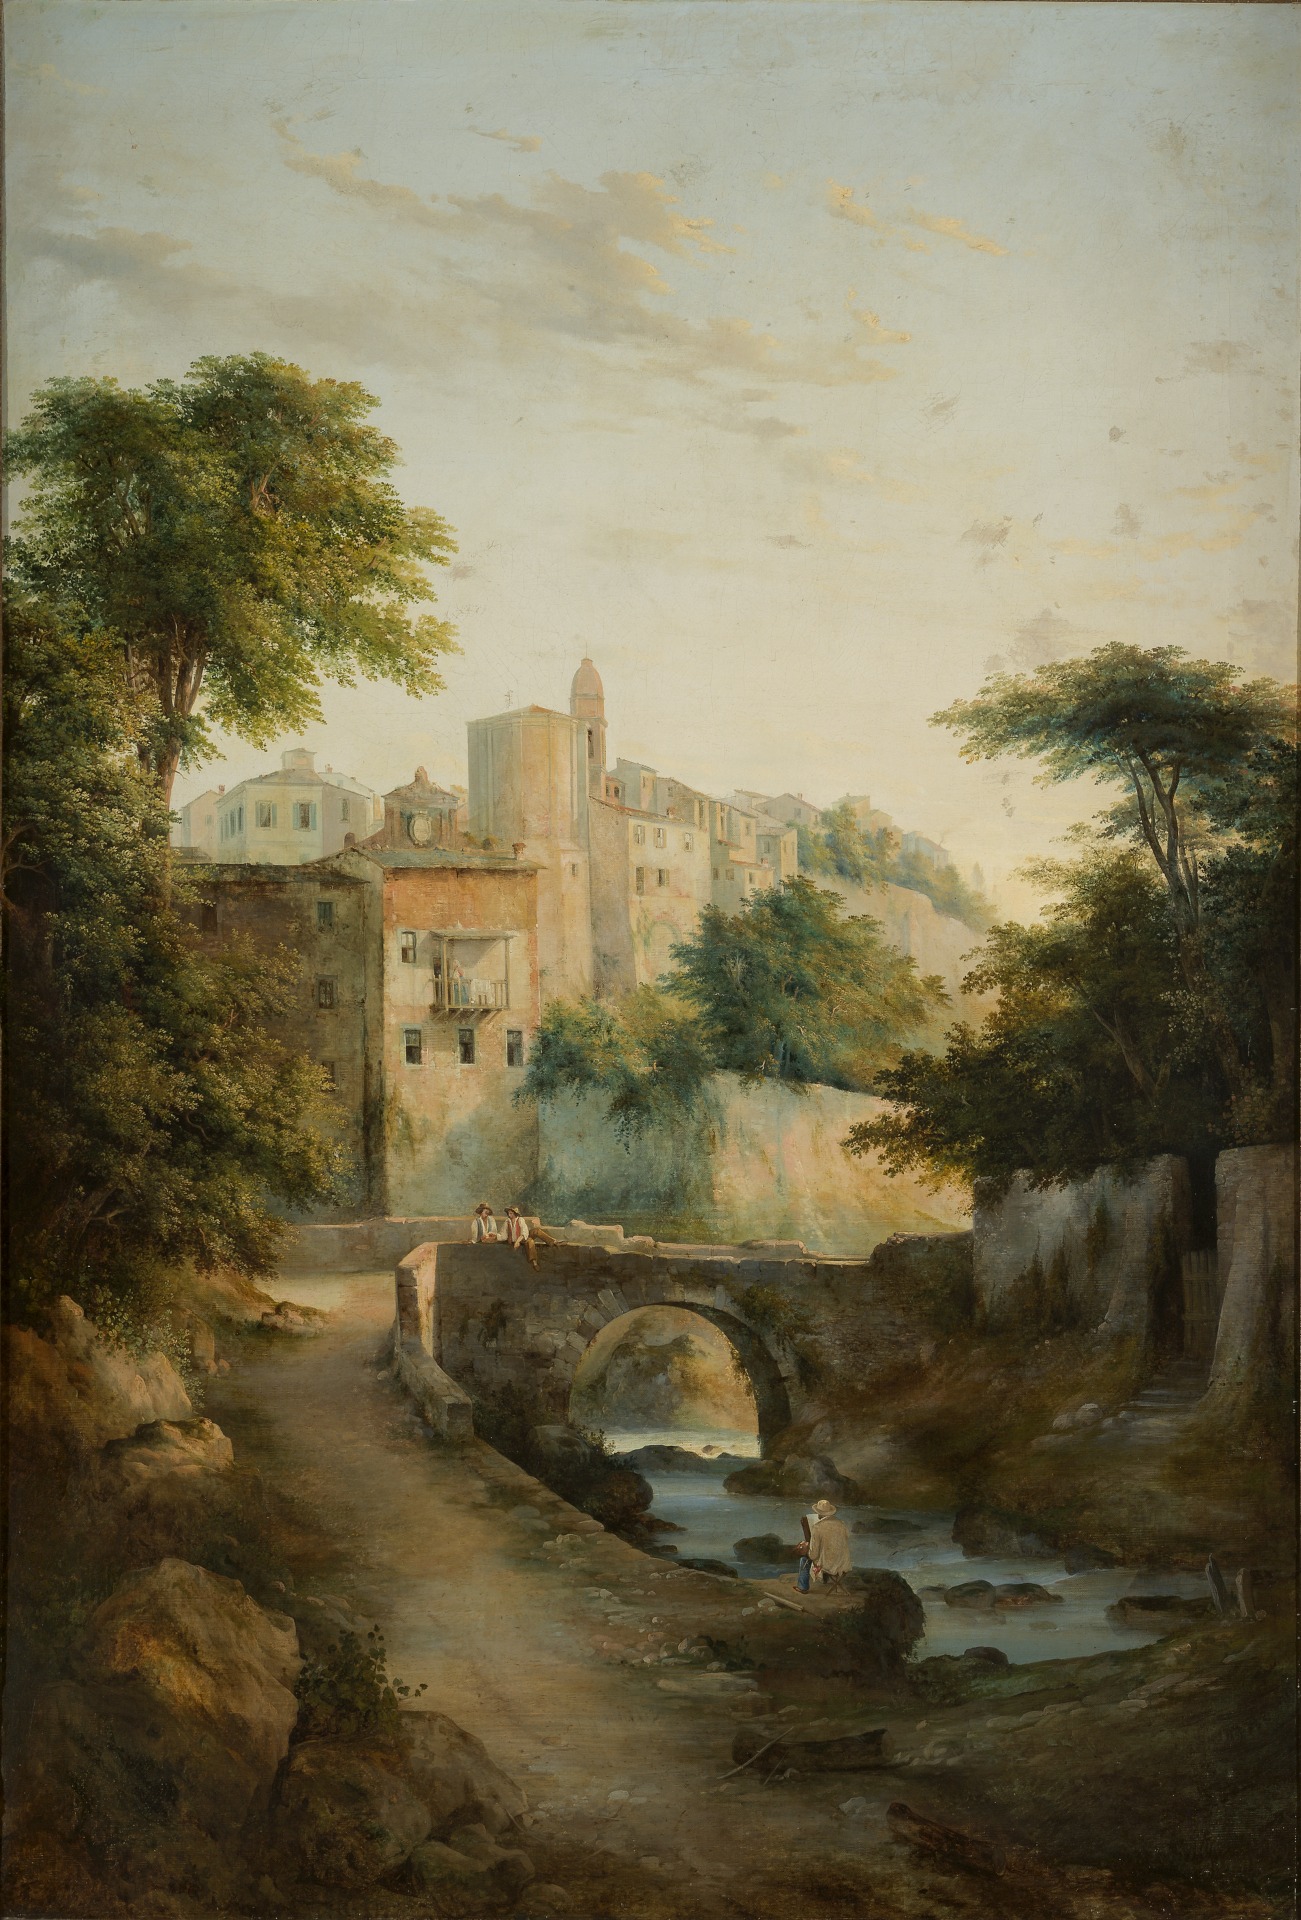 Antonio Fontanesi, Ponte sul torrente (1845-1847 circa; olio su tela, 180 x 118 cm; Reggio Emilia, Collezione Fondazione Manodori)
 